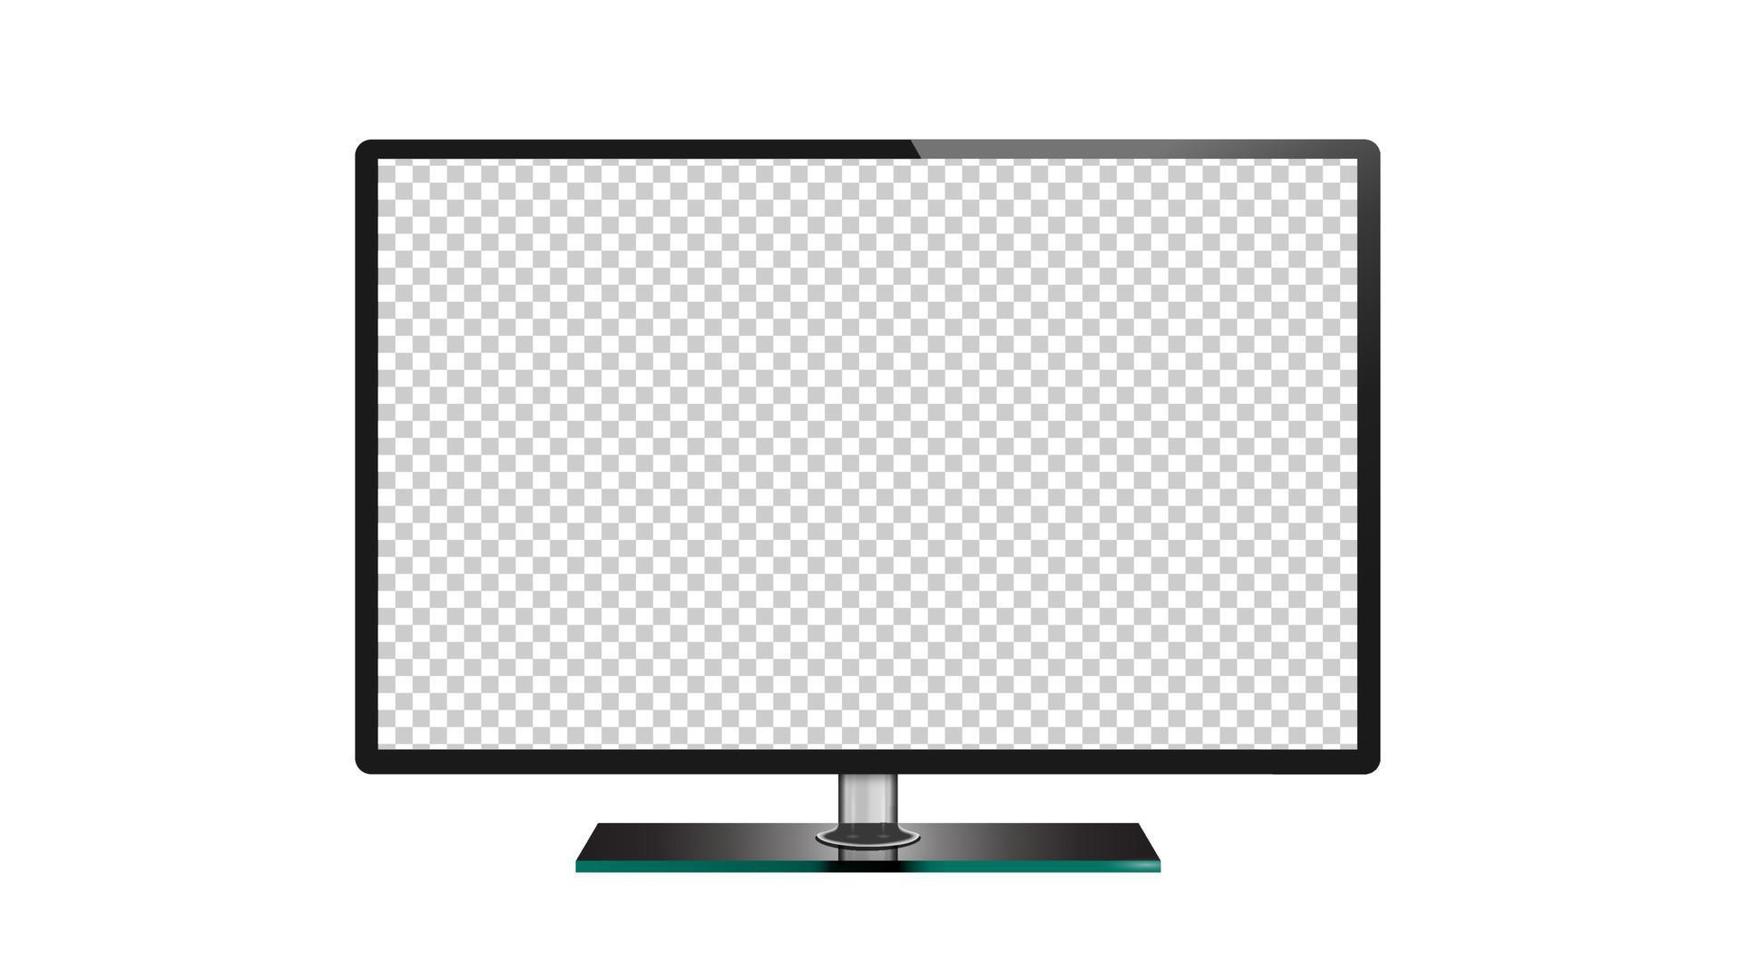 TV-Flachbild-LCD, Plasma, LED-TV-Monitor isoliert vektor